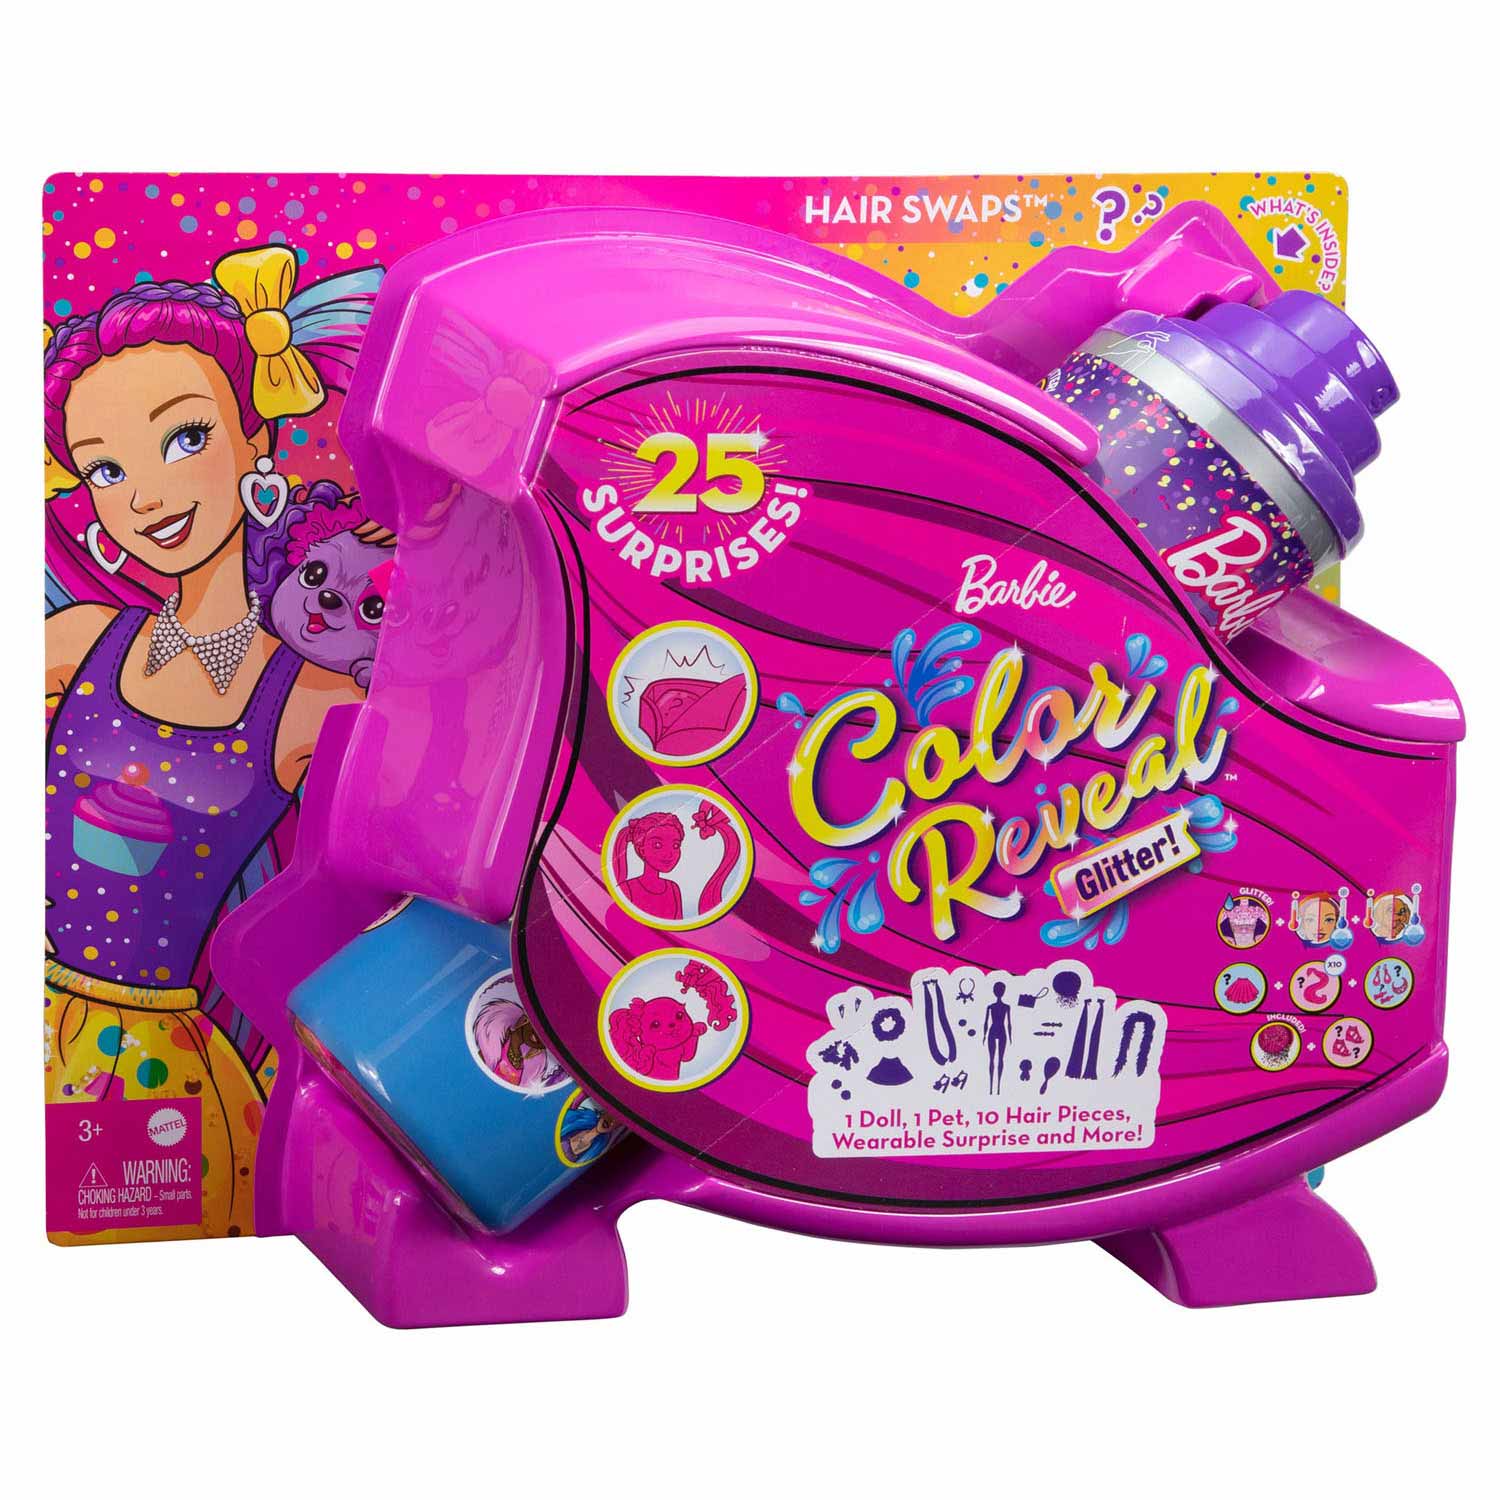 Barbie Color Reveal Wholesale